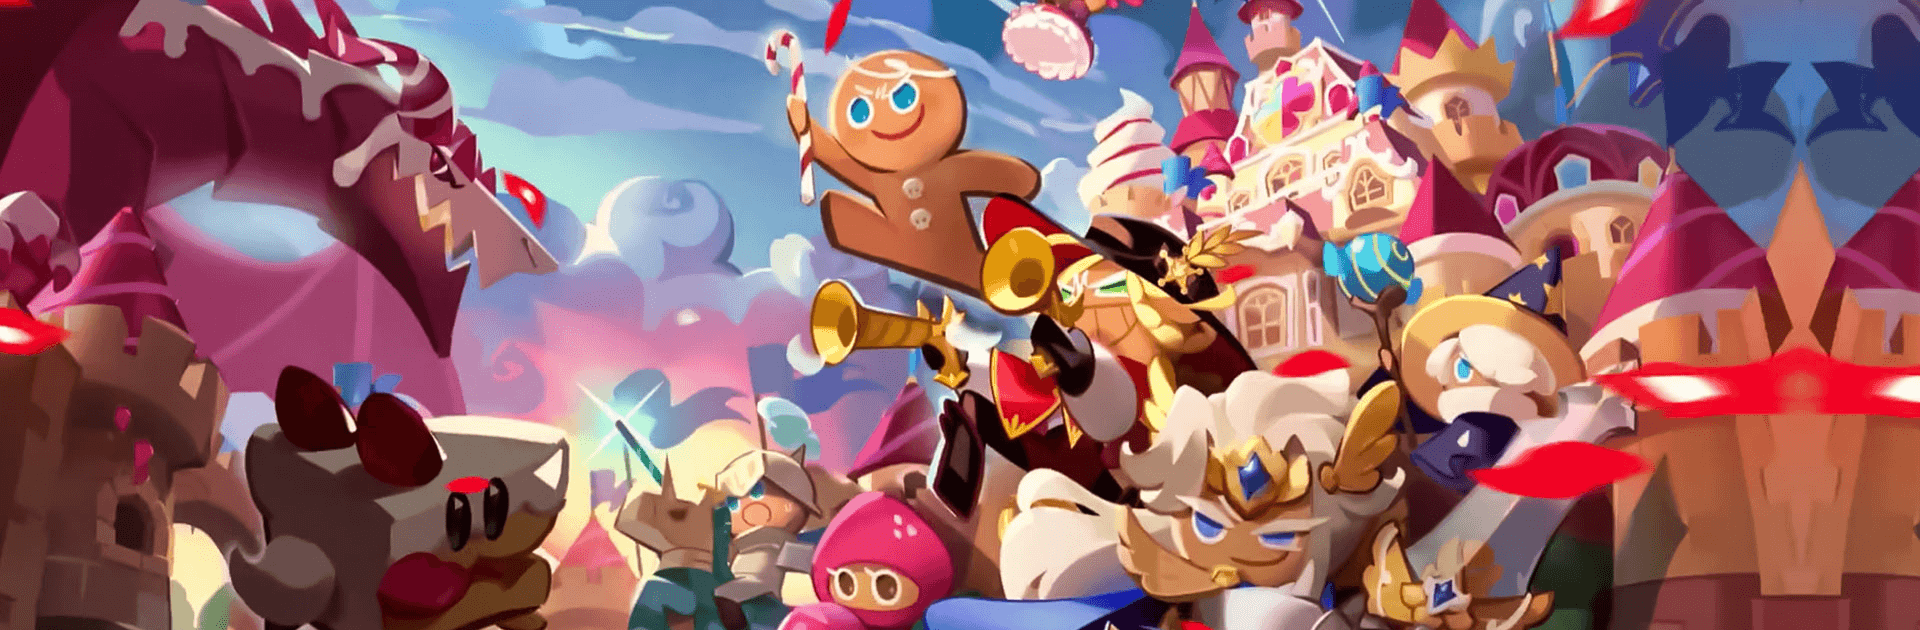 Cookie Run: Kingdom - Hãy cùng khám phá thế giới ngọt ngào và đầy màu sắc của Cookie Run: Kingdom. Với những nhân vật dễ thương và hấp dẫn, trò chơi này sẽ mang đến những giờ phút giải trí thú vị cho bạn.